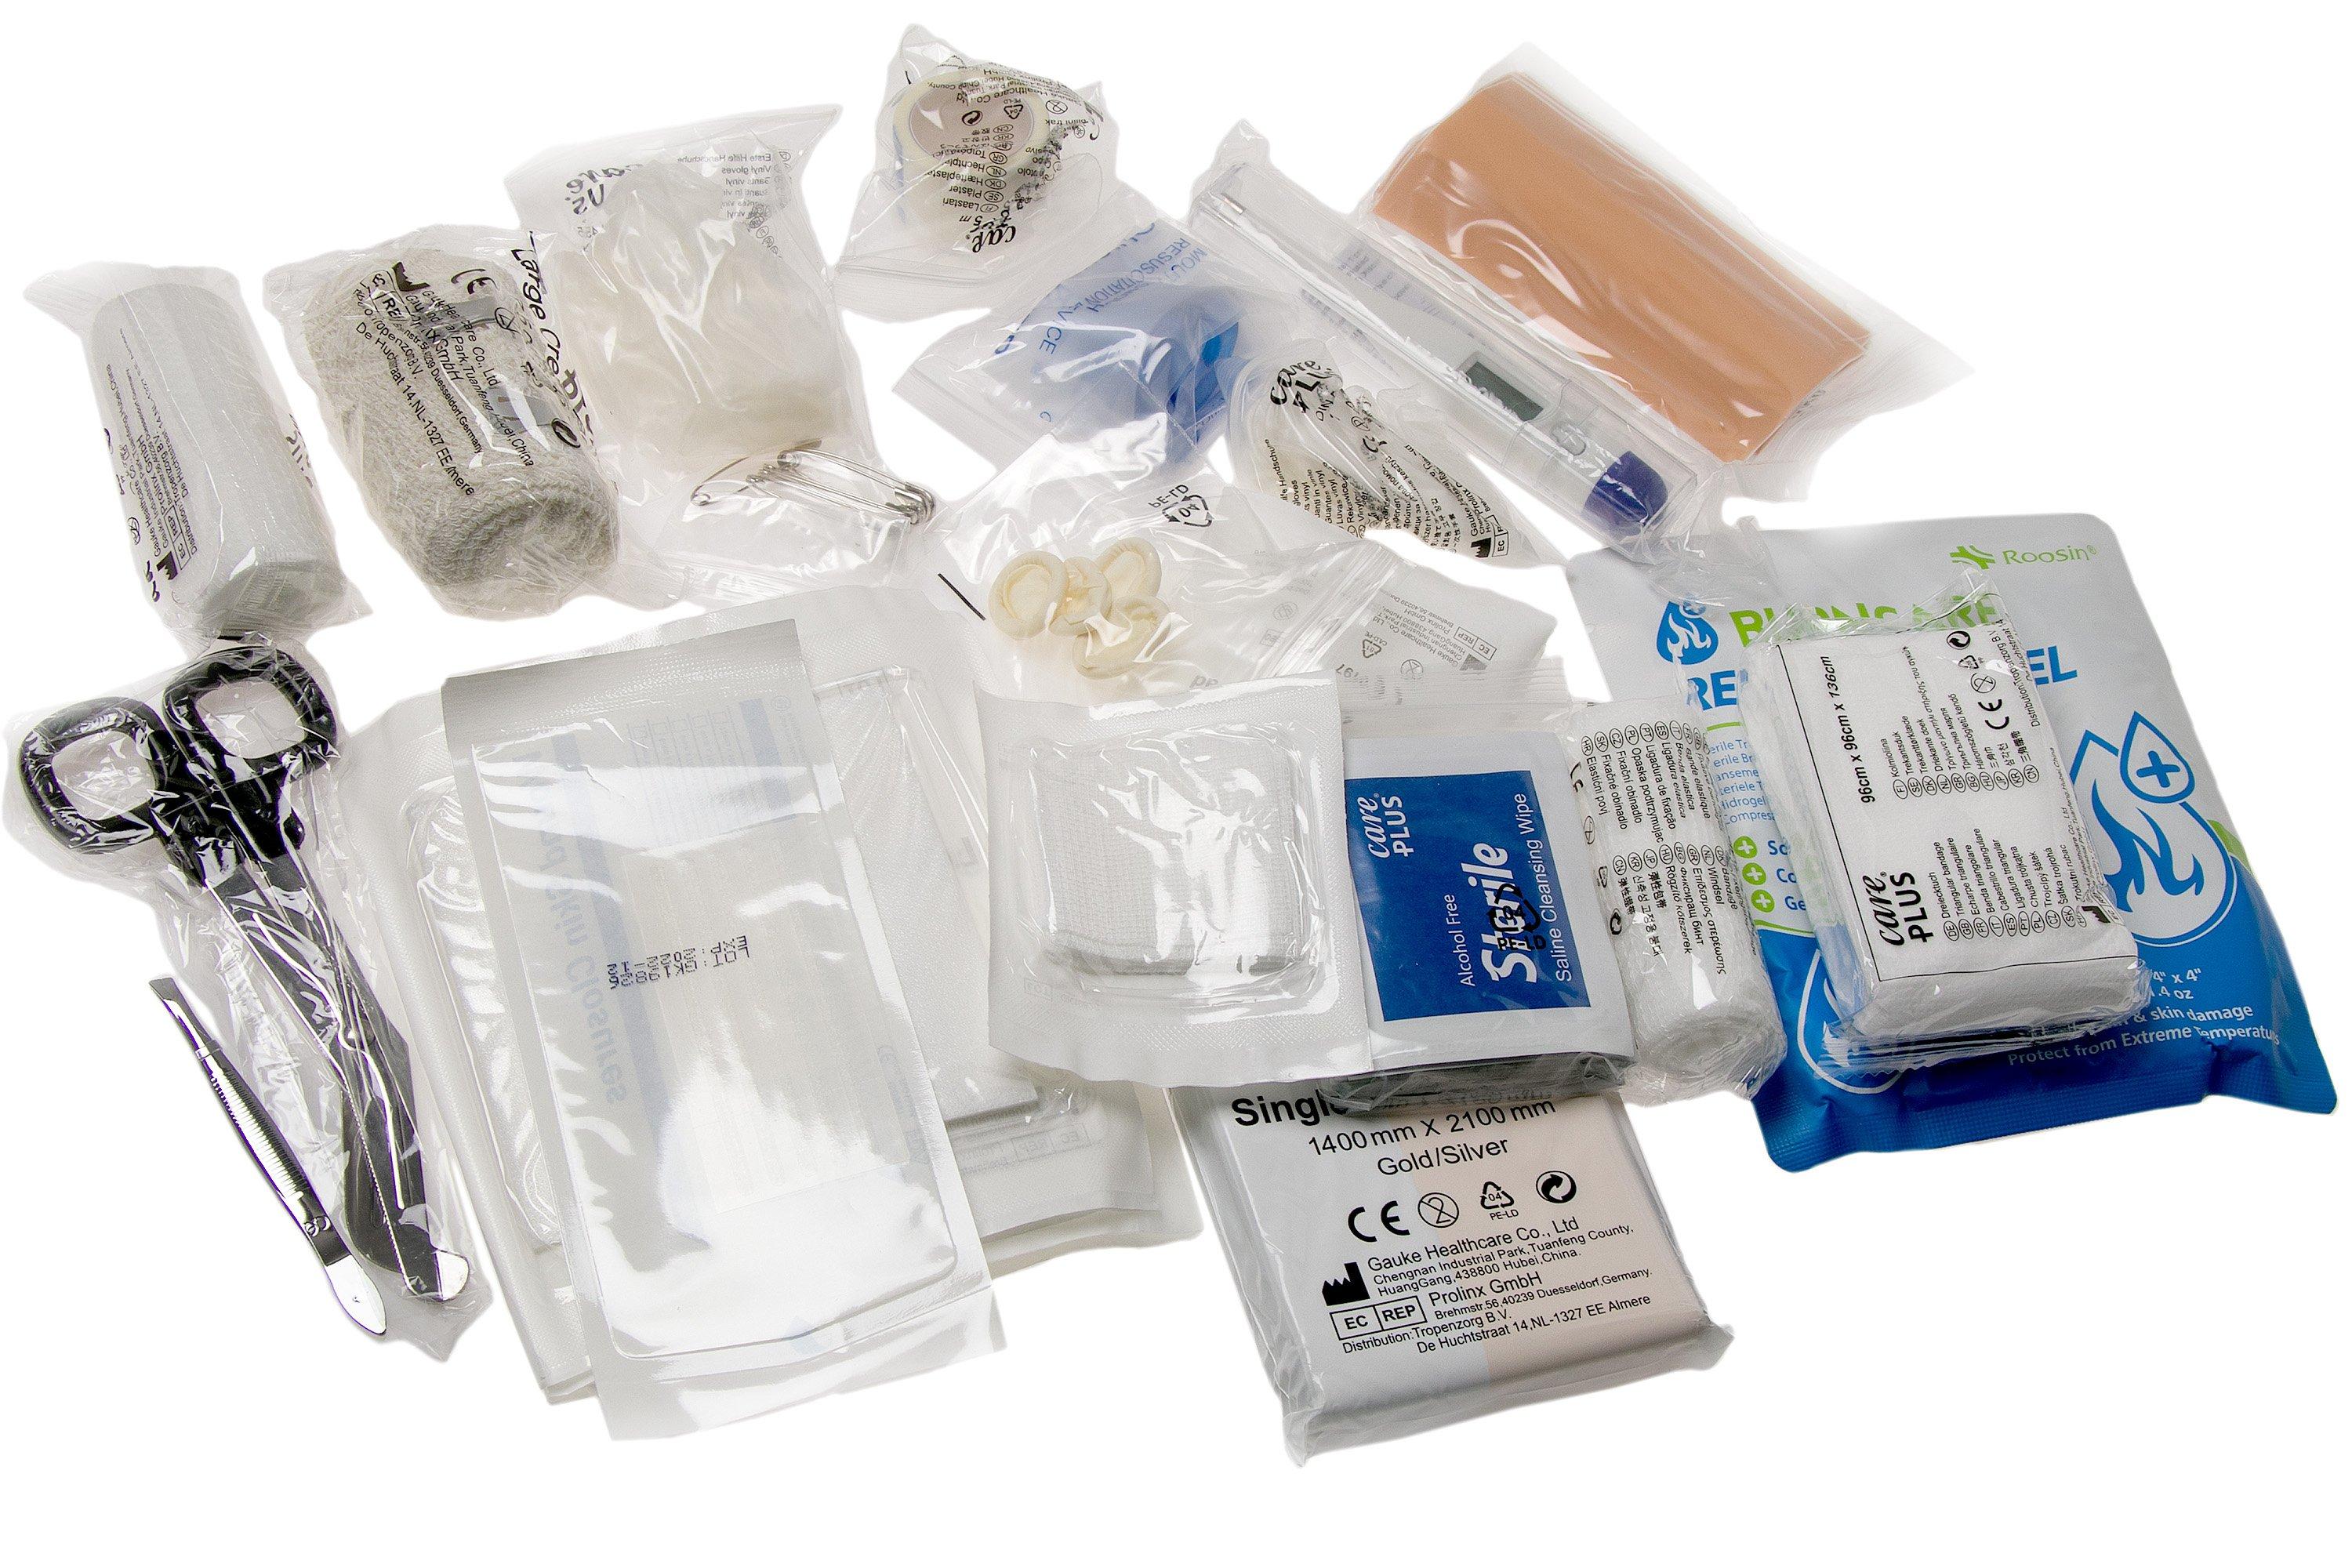 Micro kit di pronto soccorso Care Plus